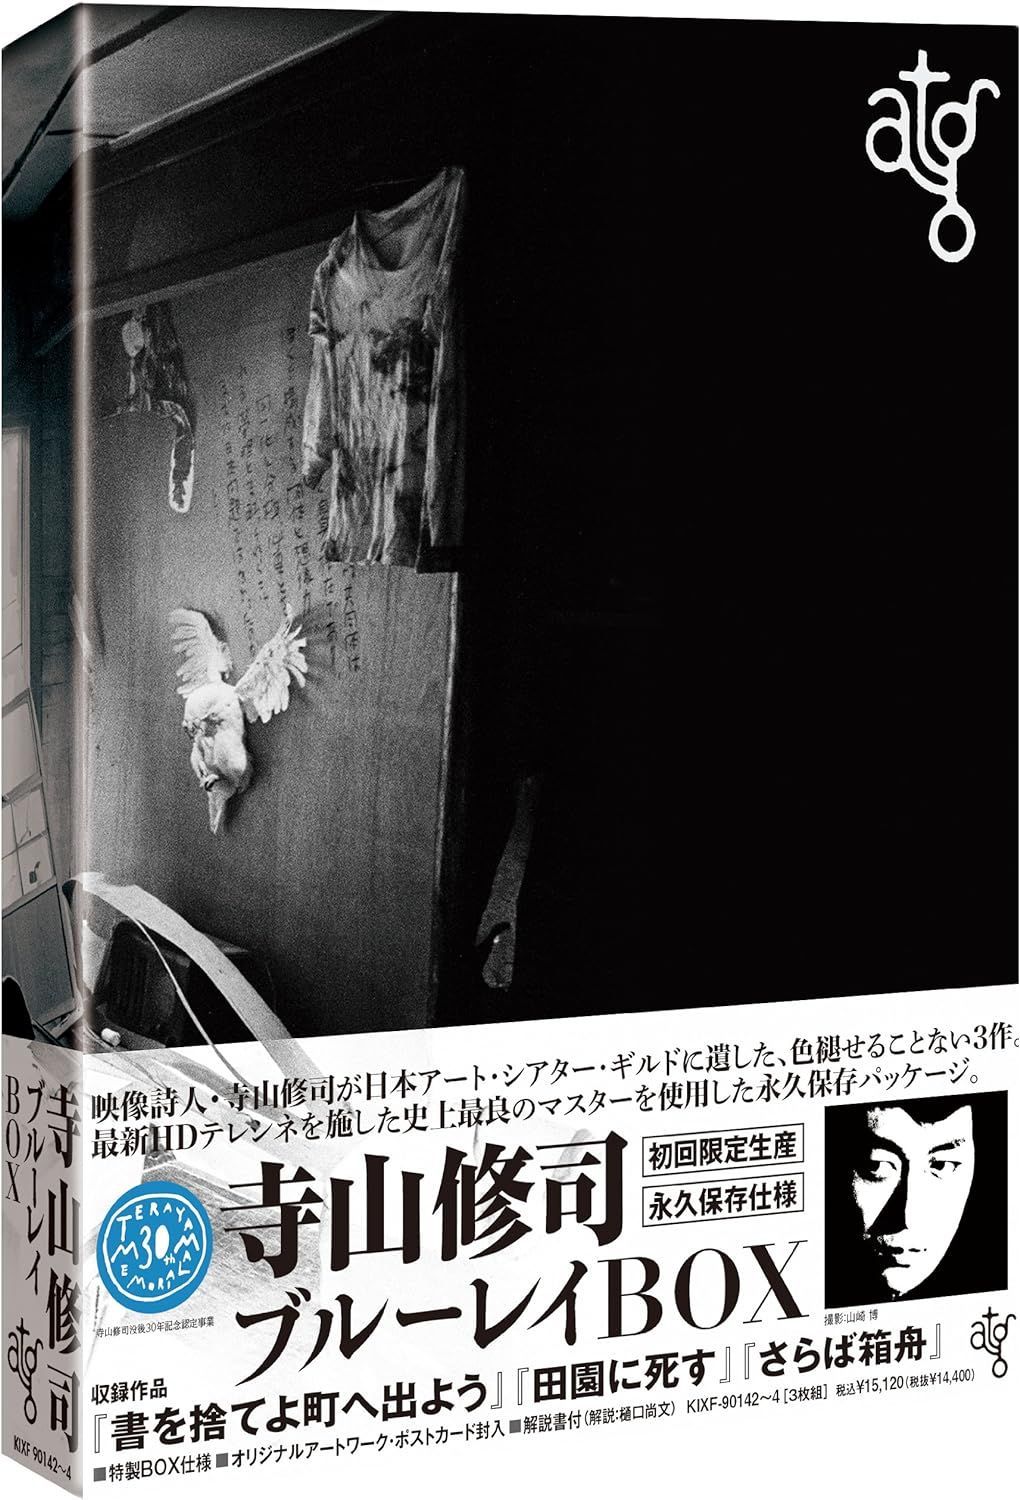 atg 寺山修司ブルーレイBOX(Blu-ray Disc) [Blu-ray] - メルカリ